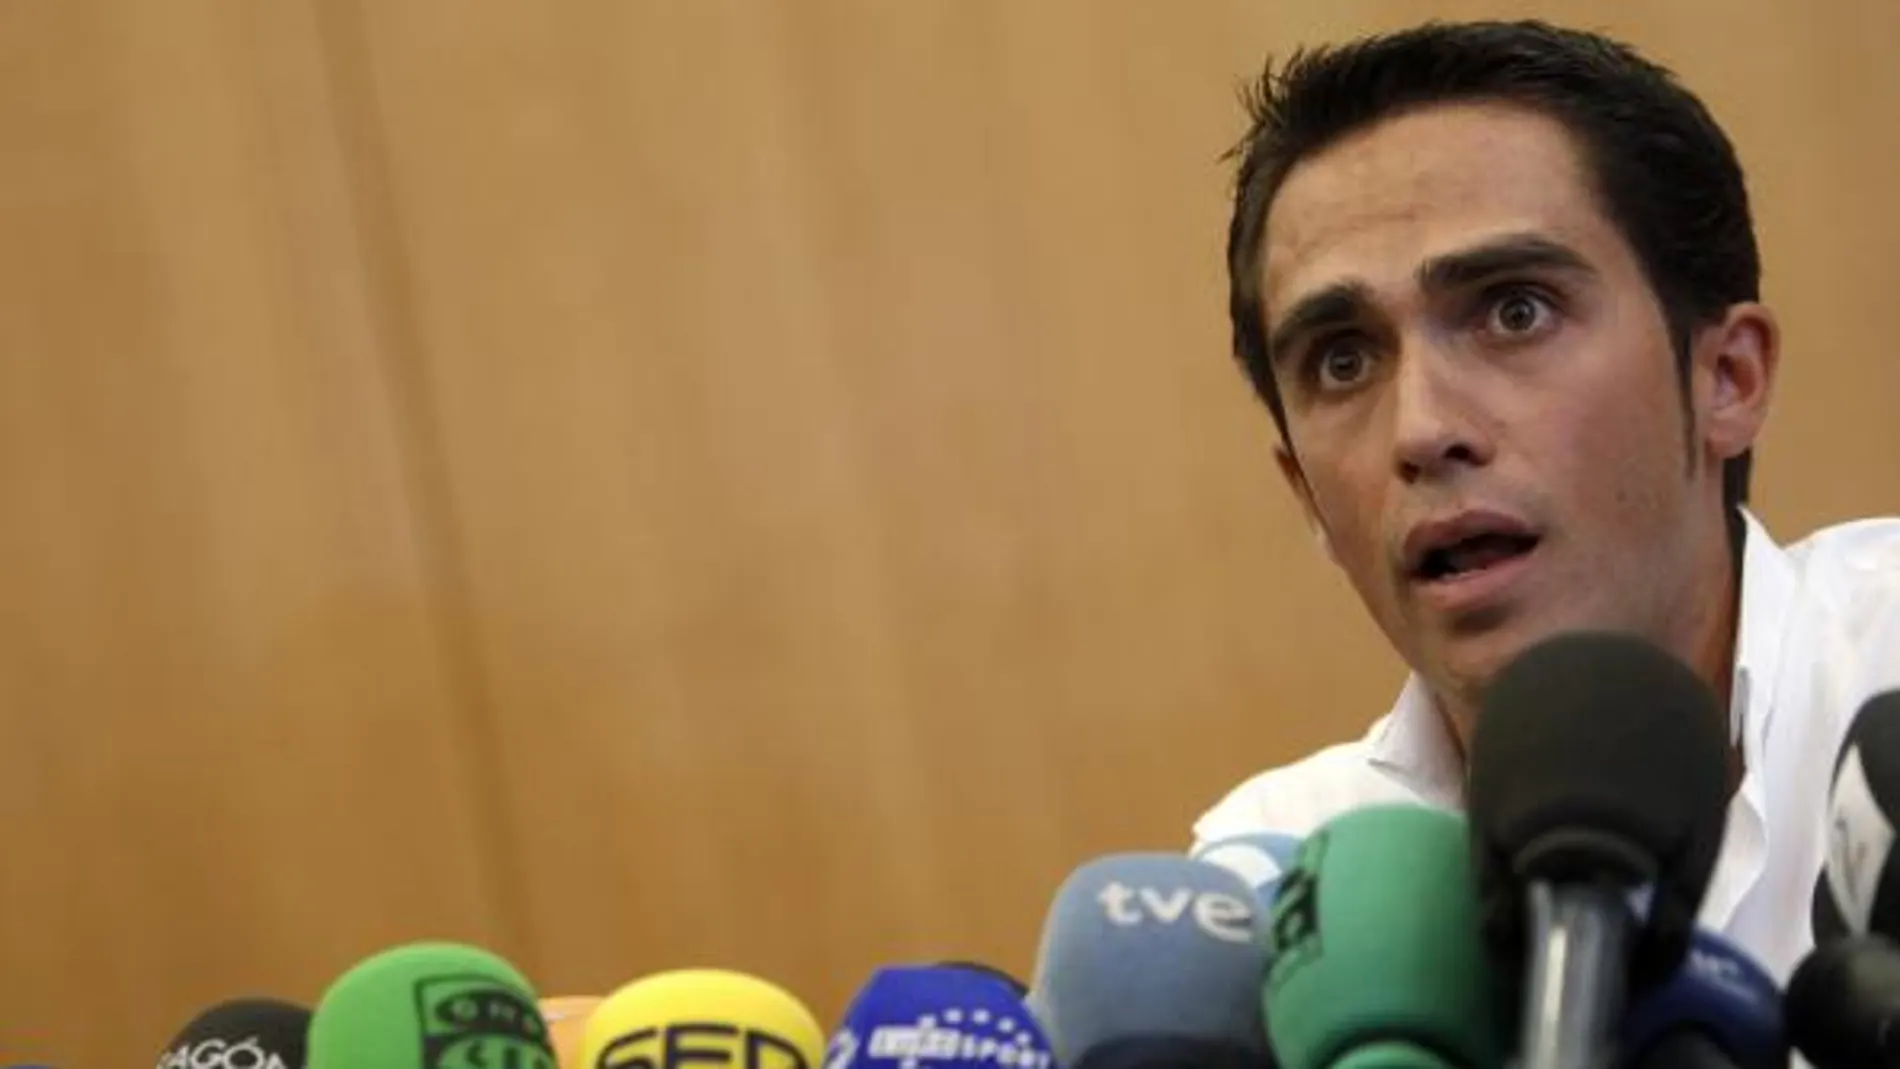 La Federación comunica a Contador la propuesta de sanción